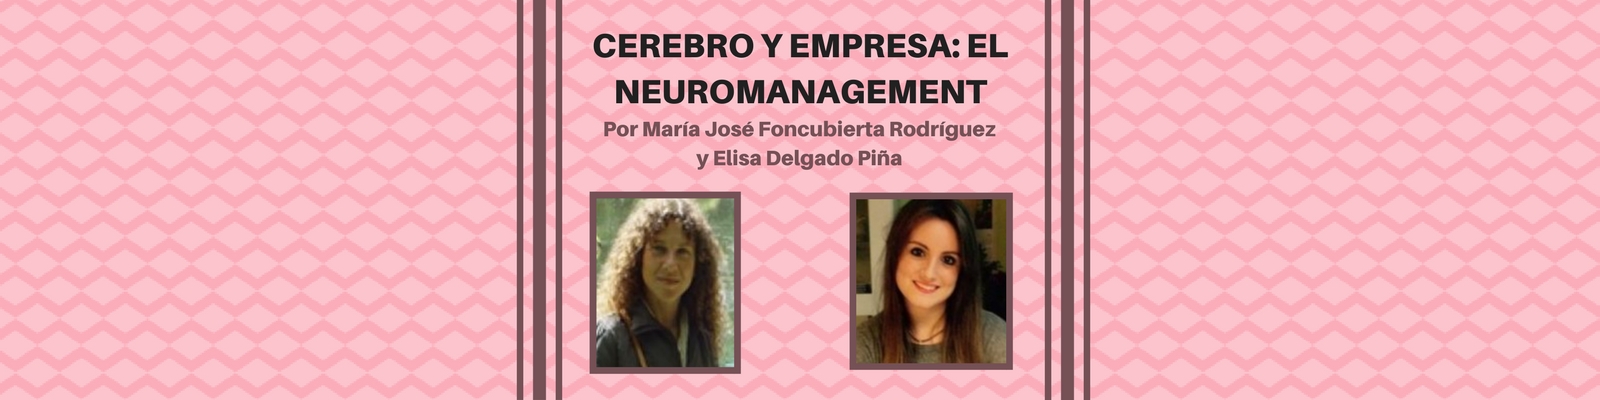 Cerebro y empresa: El Neuromanagement. Por María José Foncubierta Rodríguez y Elisa Delgado Piña